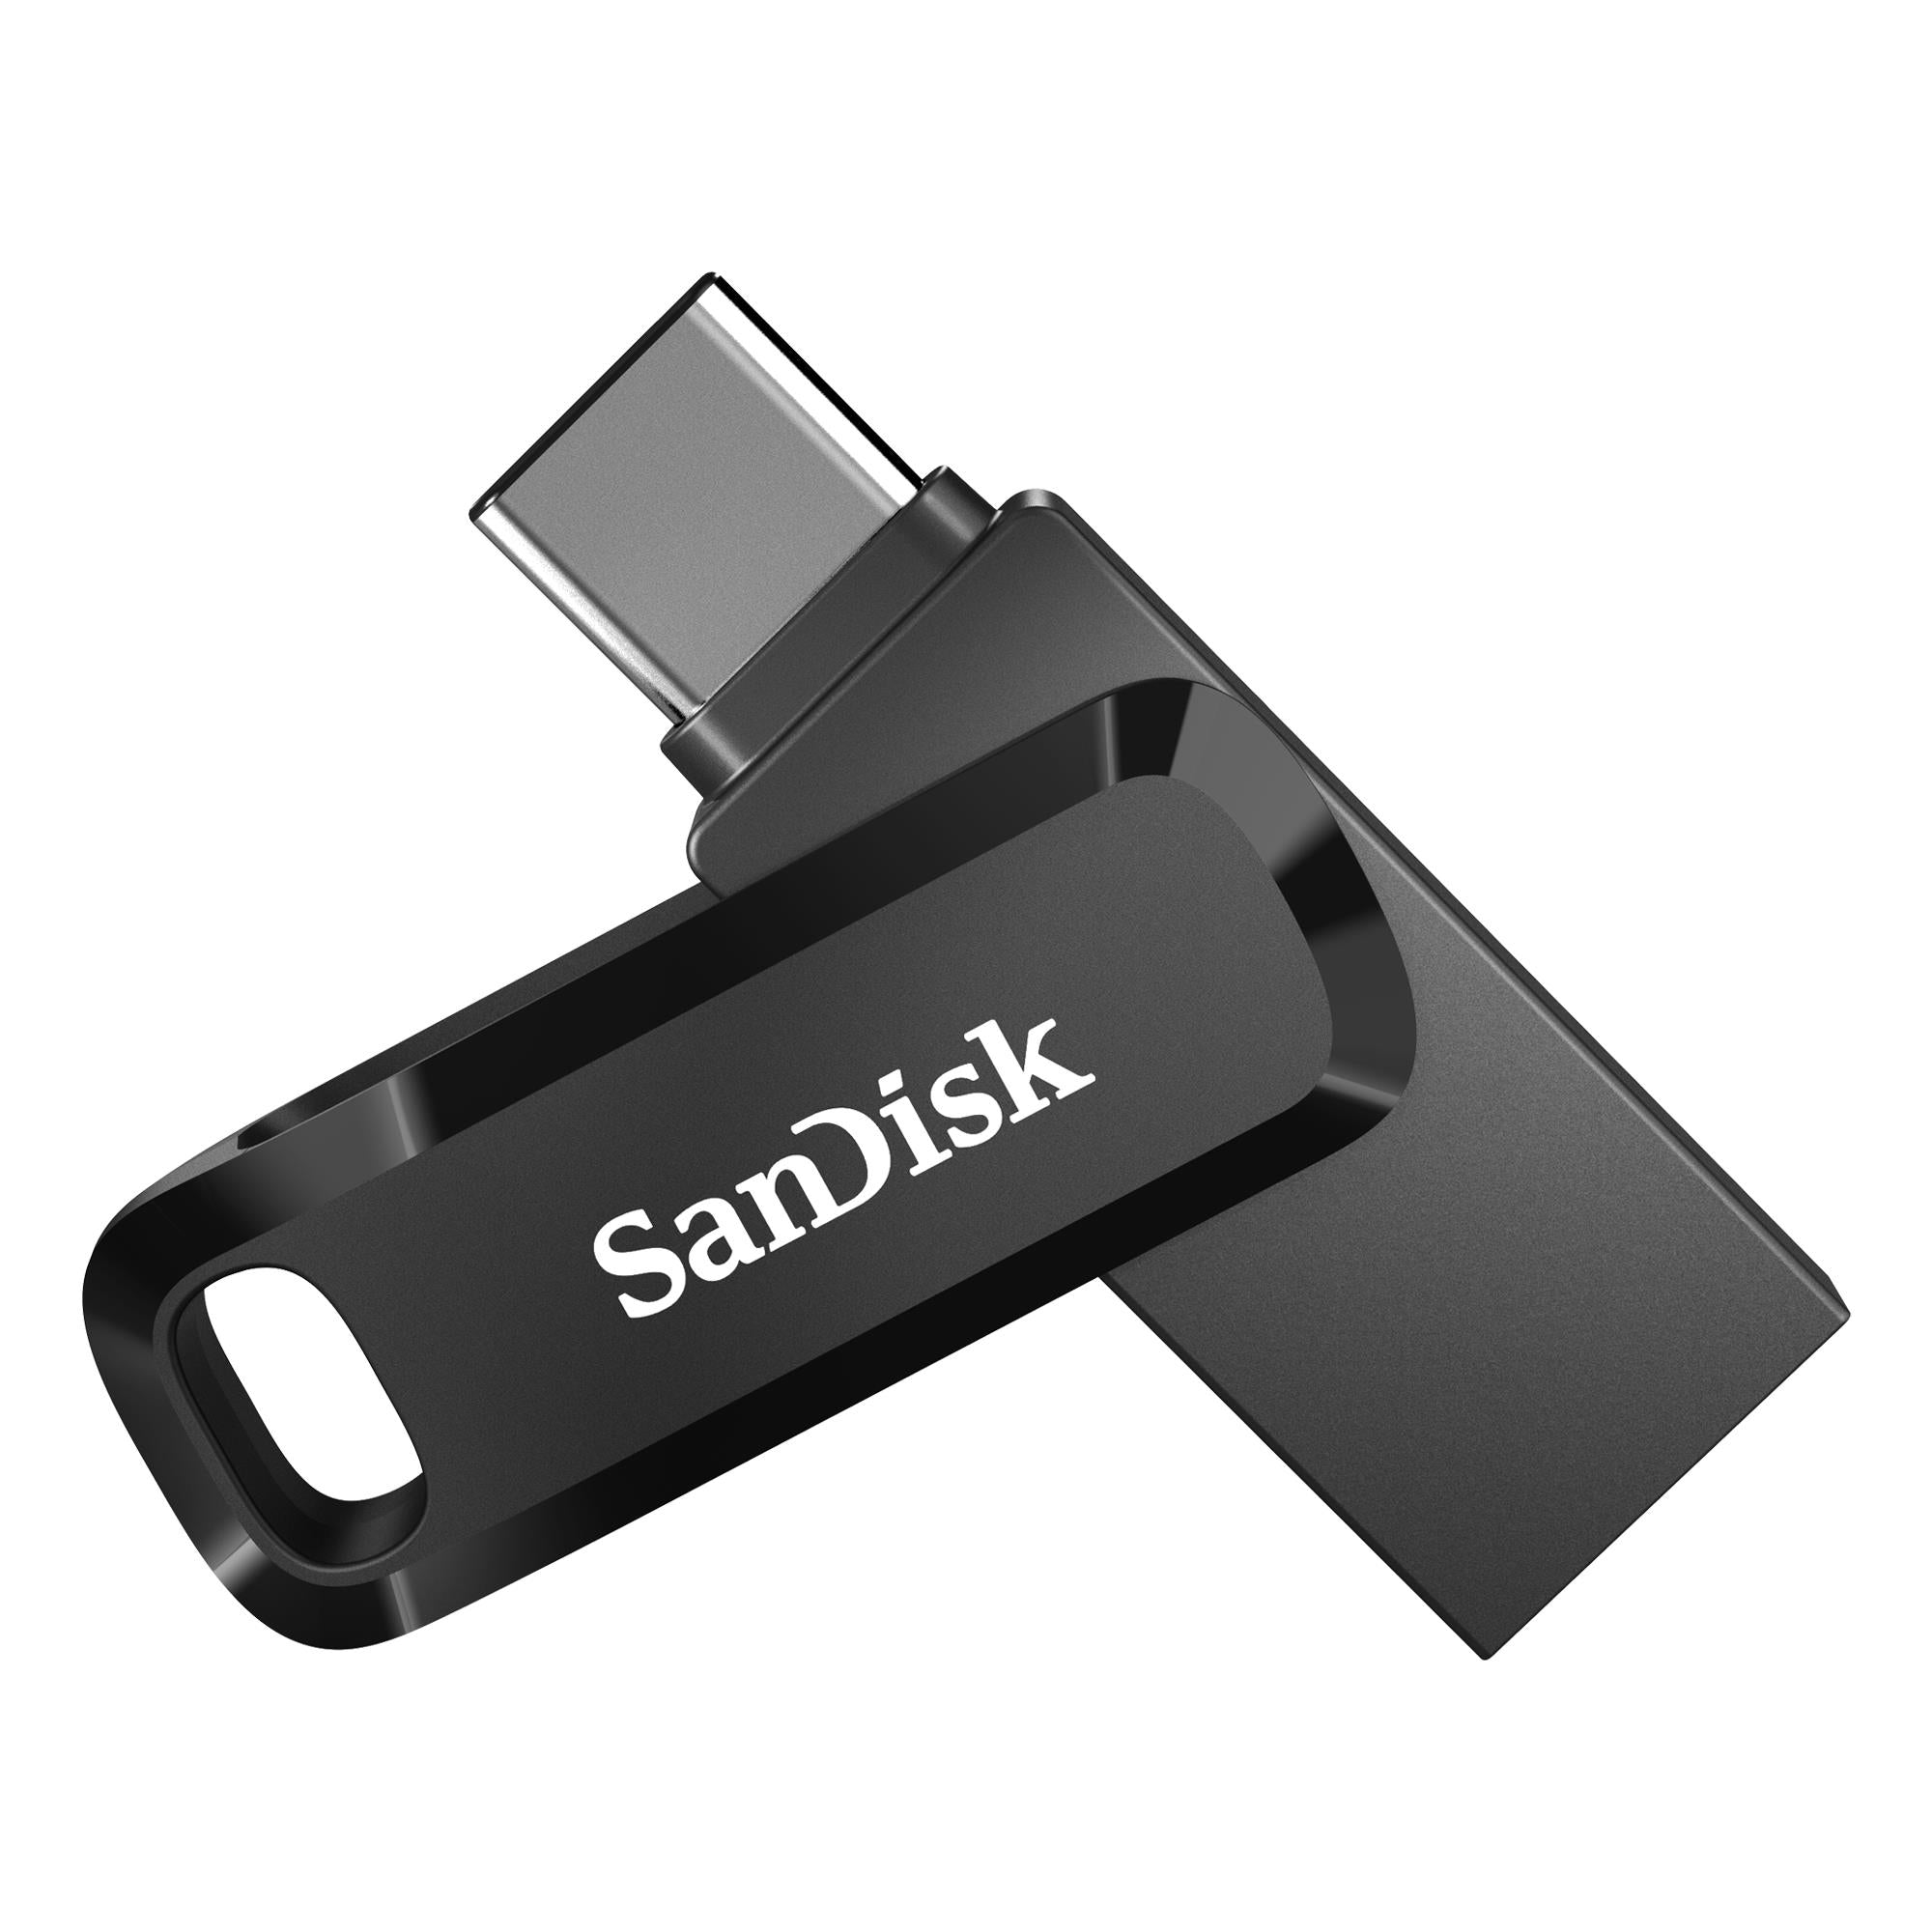 Usb Flash Drive 128gb Usb 3.0 Usb Stick Swivel Memory Stick High